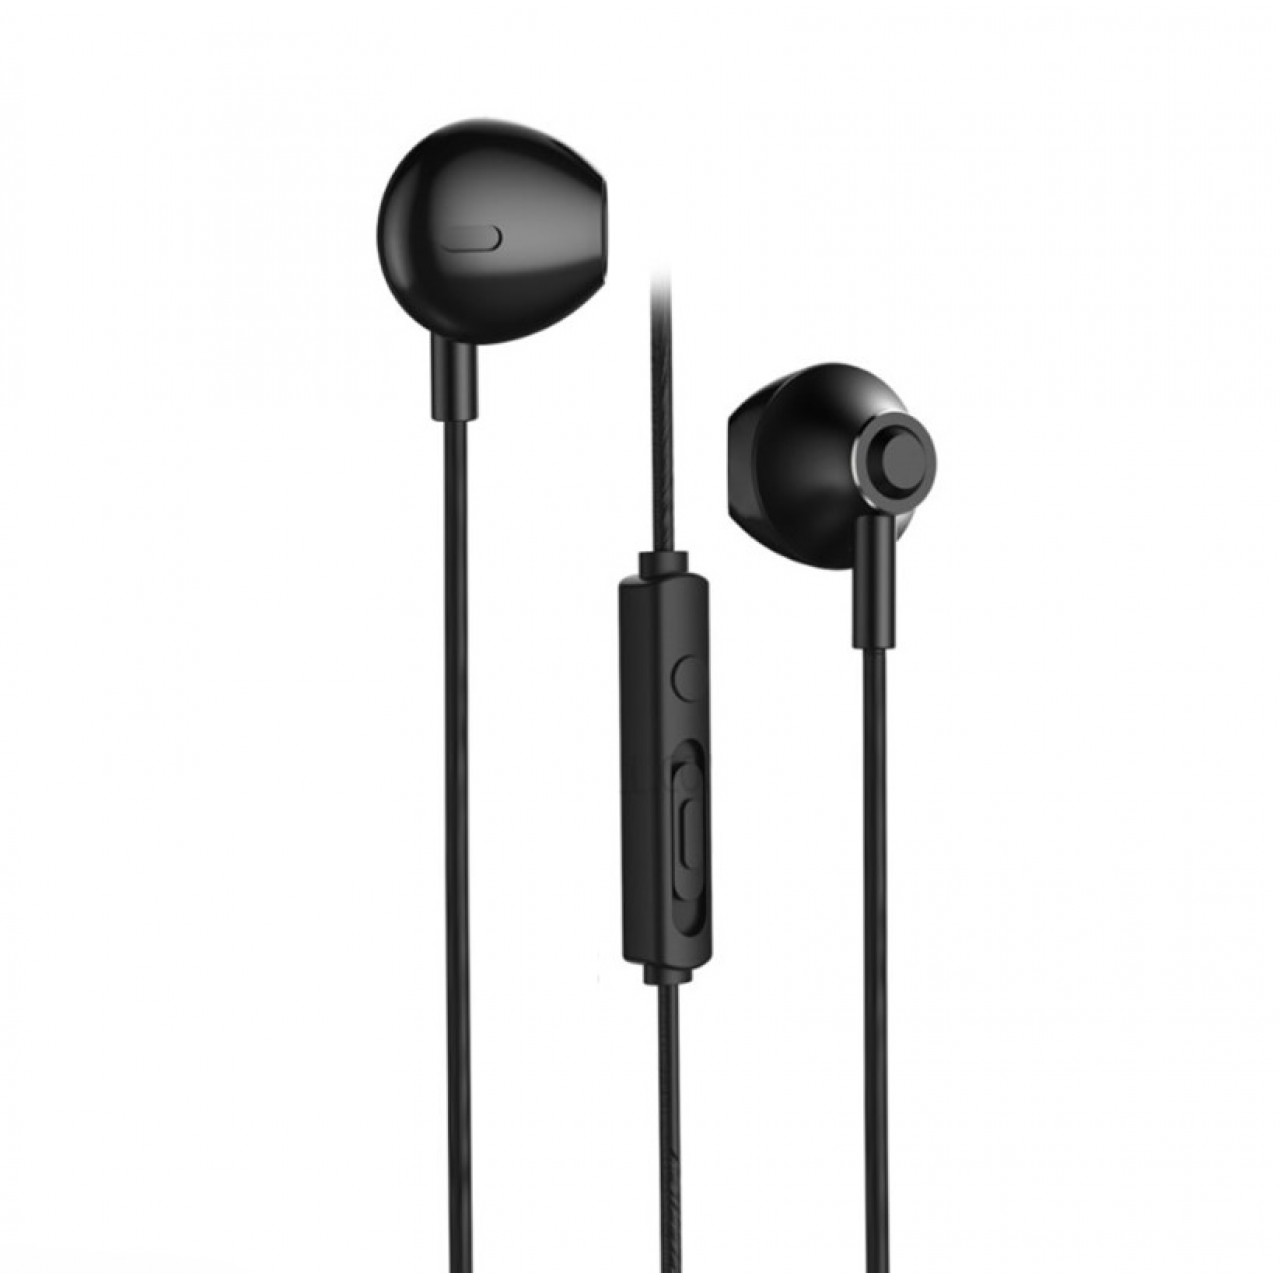 Ακουστικά Remax RM-711 Earphones Earbuds Headphones Remote Control and Microphone - 4960 - Μαύρο